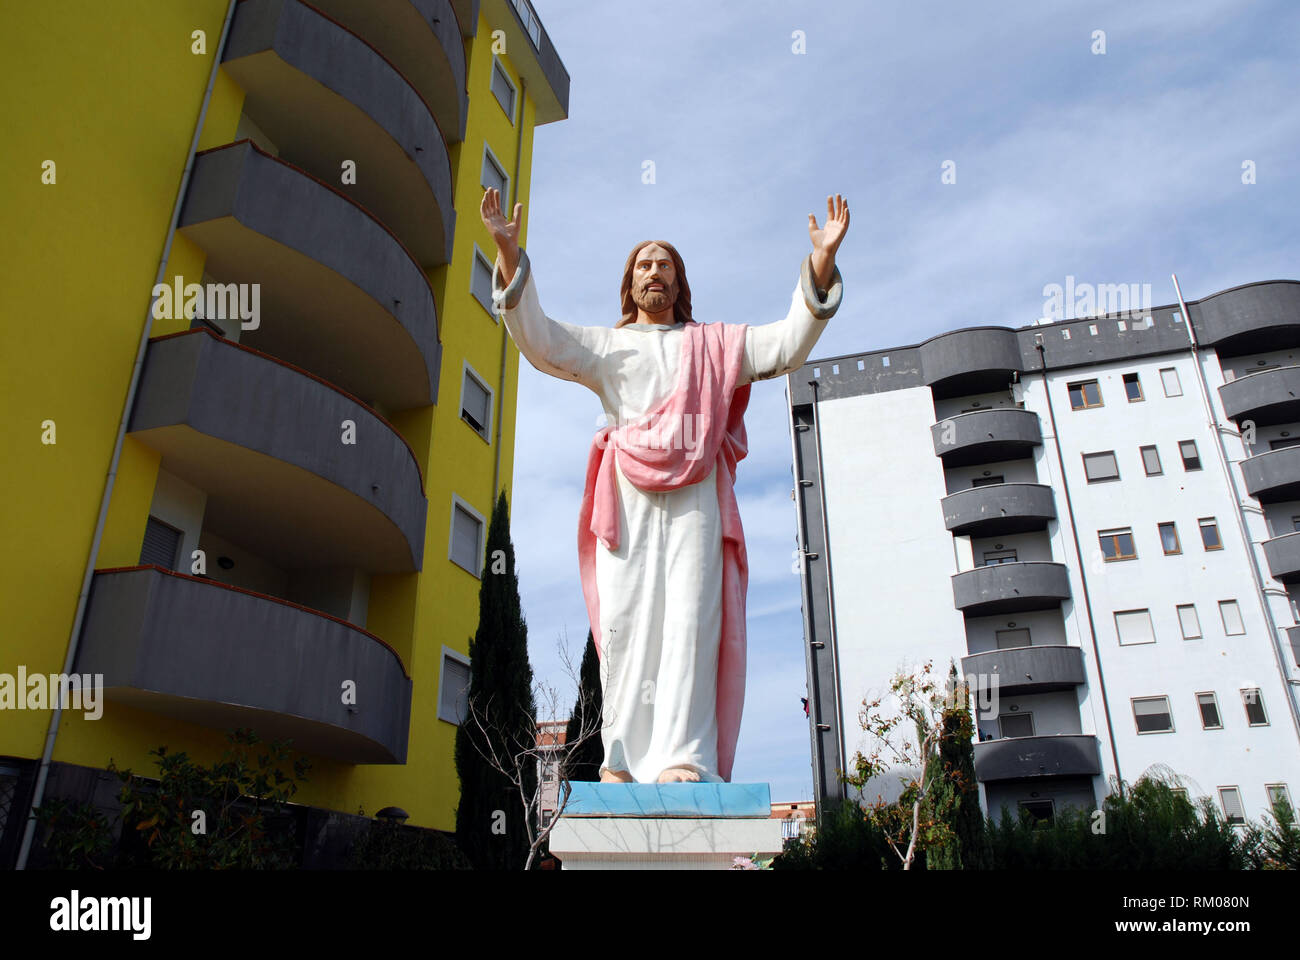 Große und beeindruckende Statue von Christus am Eingang einer Wohnanlage als ostentative Symbol des Glaubens gelegt Stockfoto